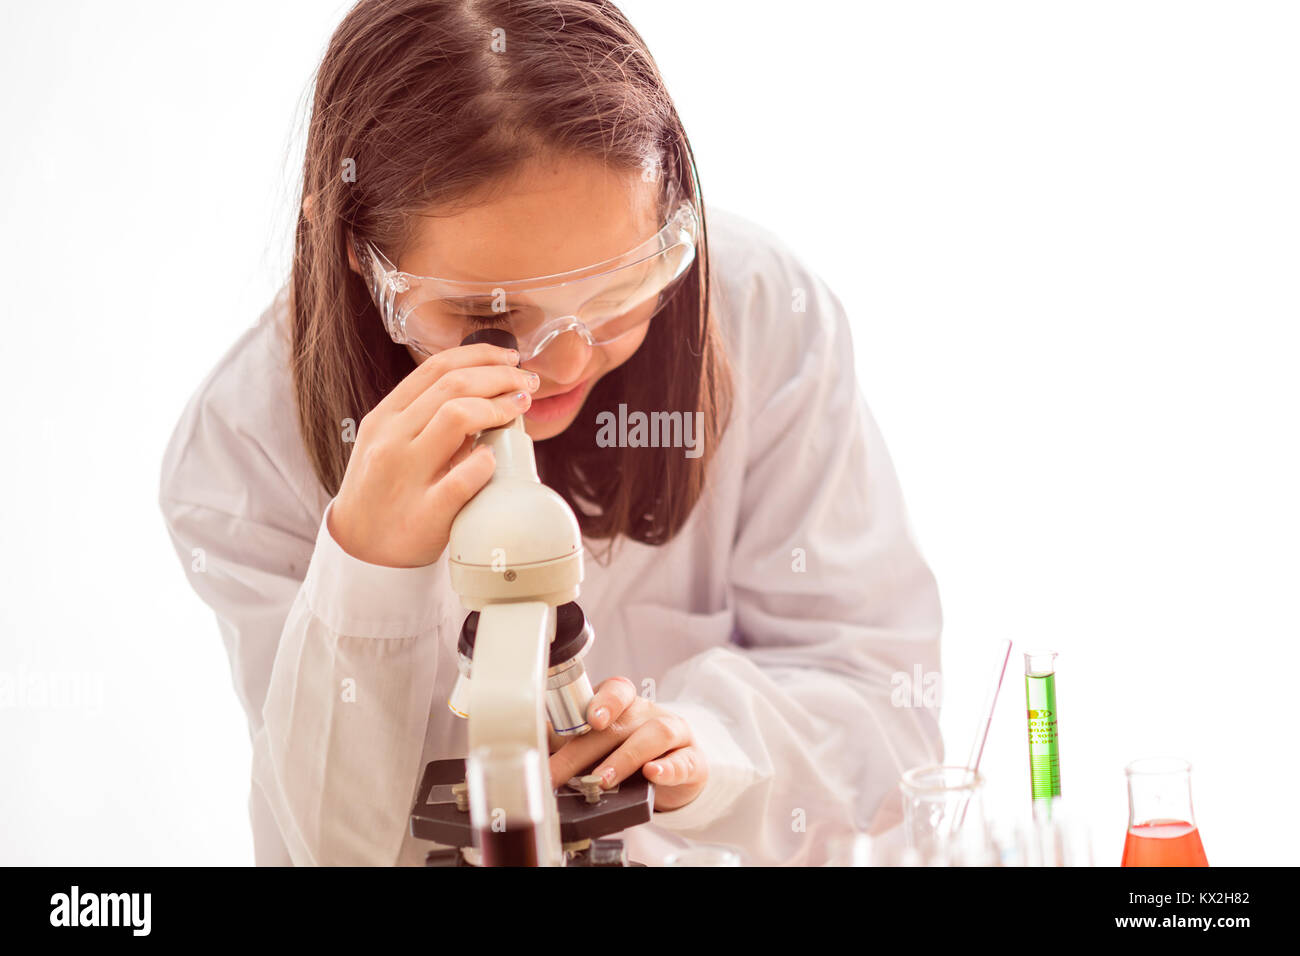 Asian American Scientist doing de l'enfant expérience scientifique avec microscope Banque D'Images